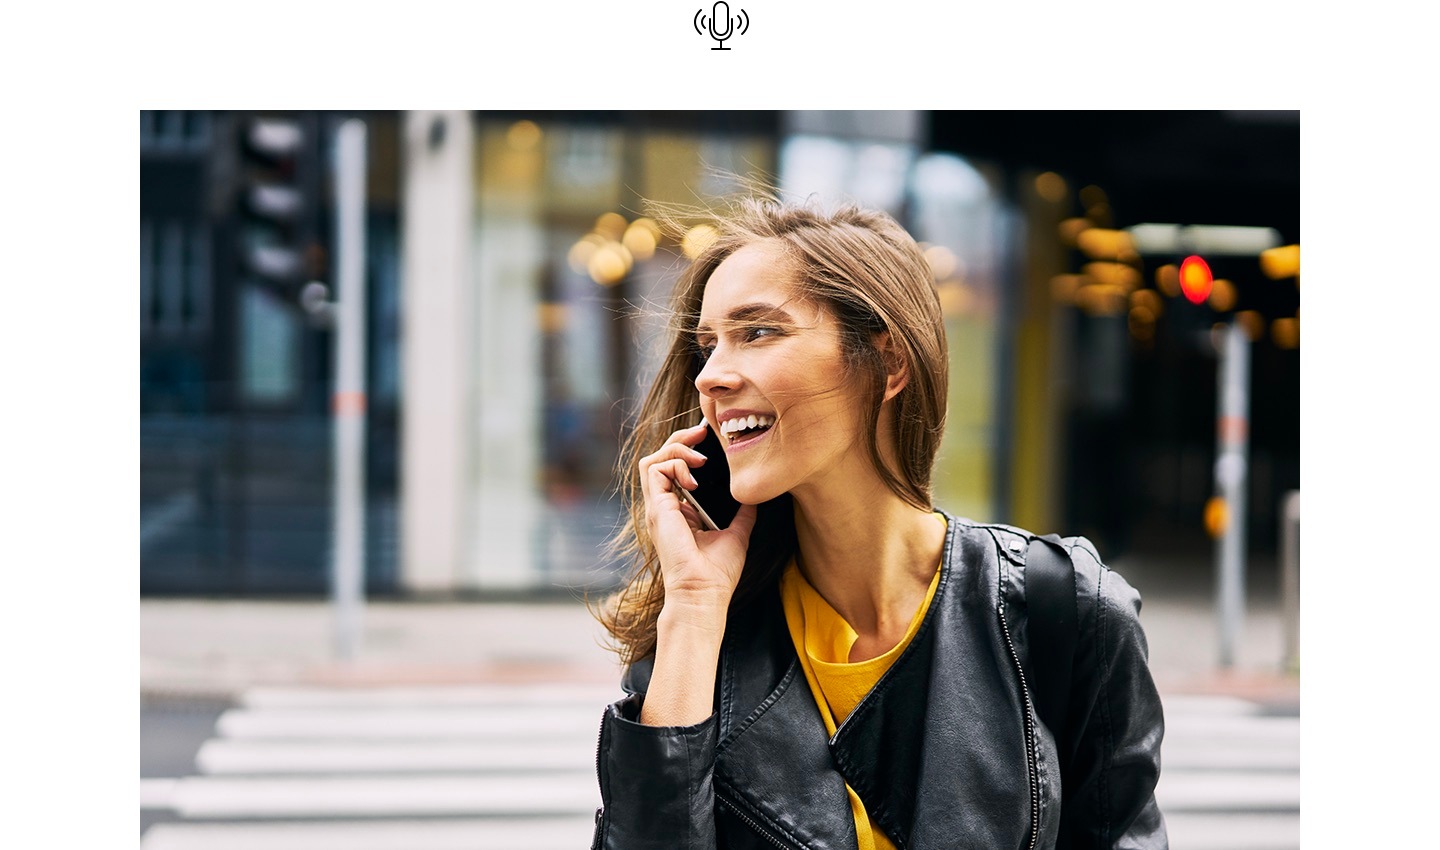 O femeie, zâmbind, vorbește la telefon în timp ce trece peste drum. Mai sus, este afișată pictograma Voice Focus.